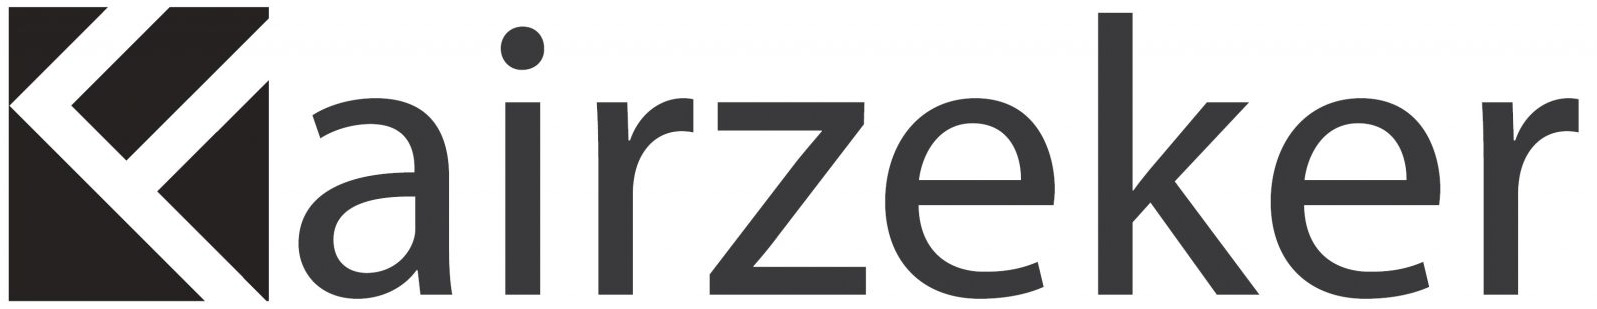 Fairzeker logo